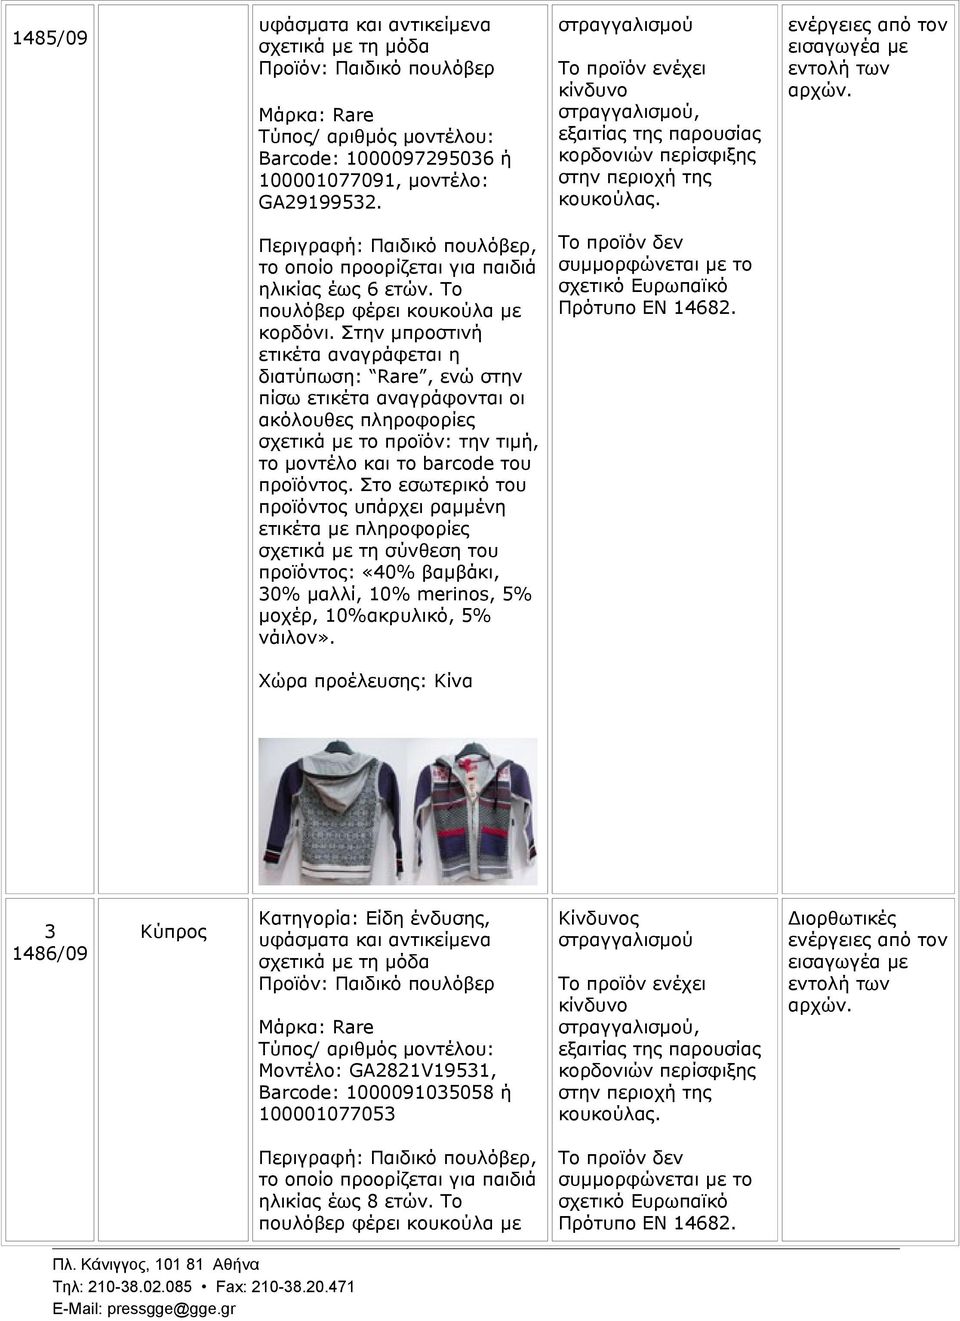 ενέργειες από τον εισαγωγέα με Περιγραφή: Παιδικό πουλόβερ, το οποίο προορίζεται για παιδιά ηλικίας έως 6 ετών. Το πουλόβερ φέρει κουκούλα με κορδόνι.